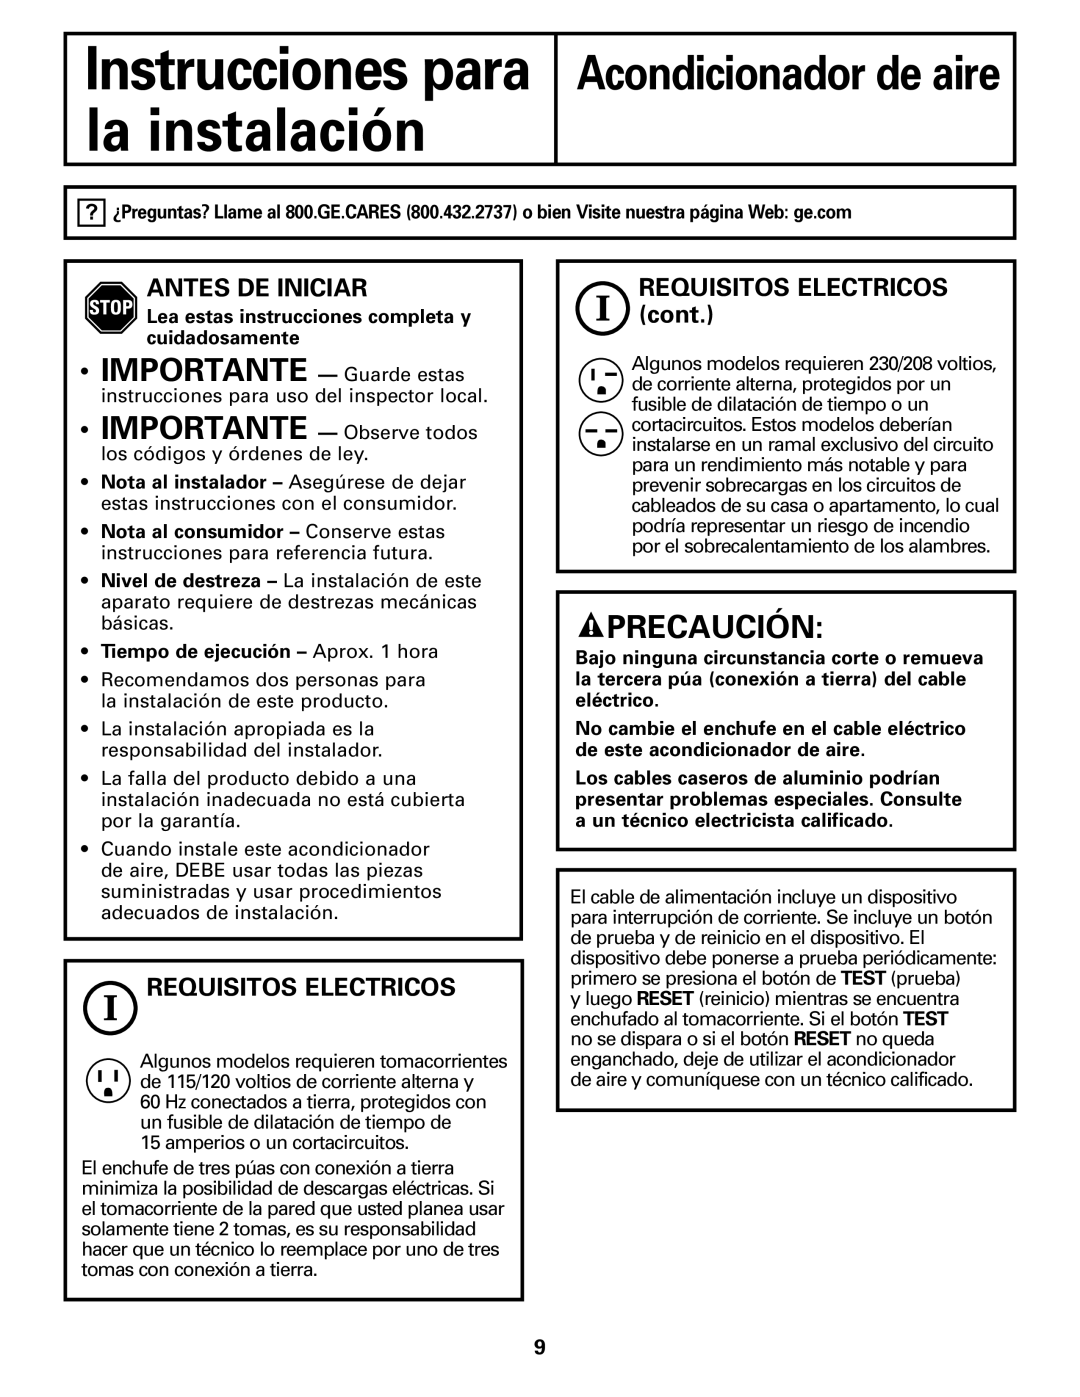 GE ASM06* installation instructions Precaución, Instrucciones para la instalación, Acondicionador de aire 